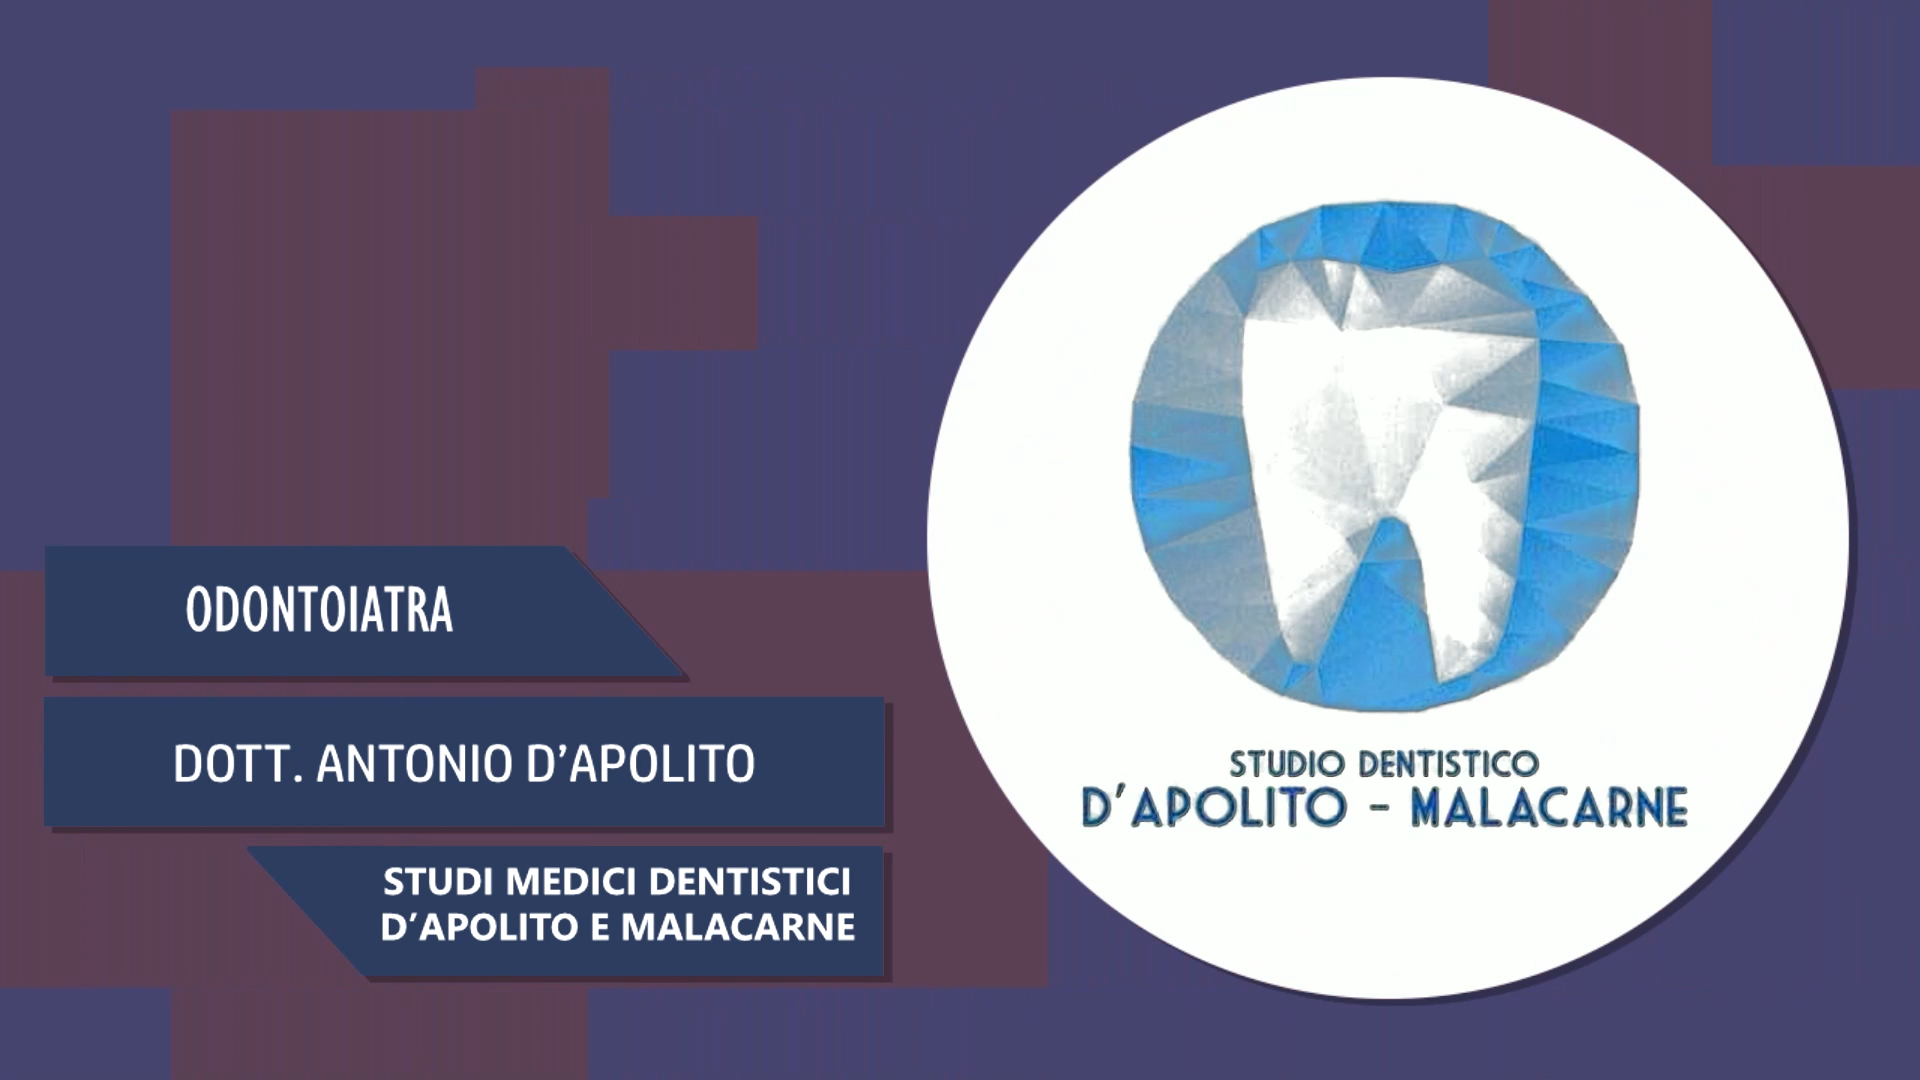 Intervista al Dott. Antonio D’Apolito – Studi medici dentistici d’Apolito e Malacarne